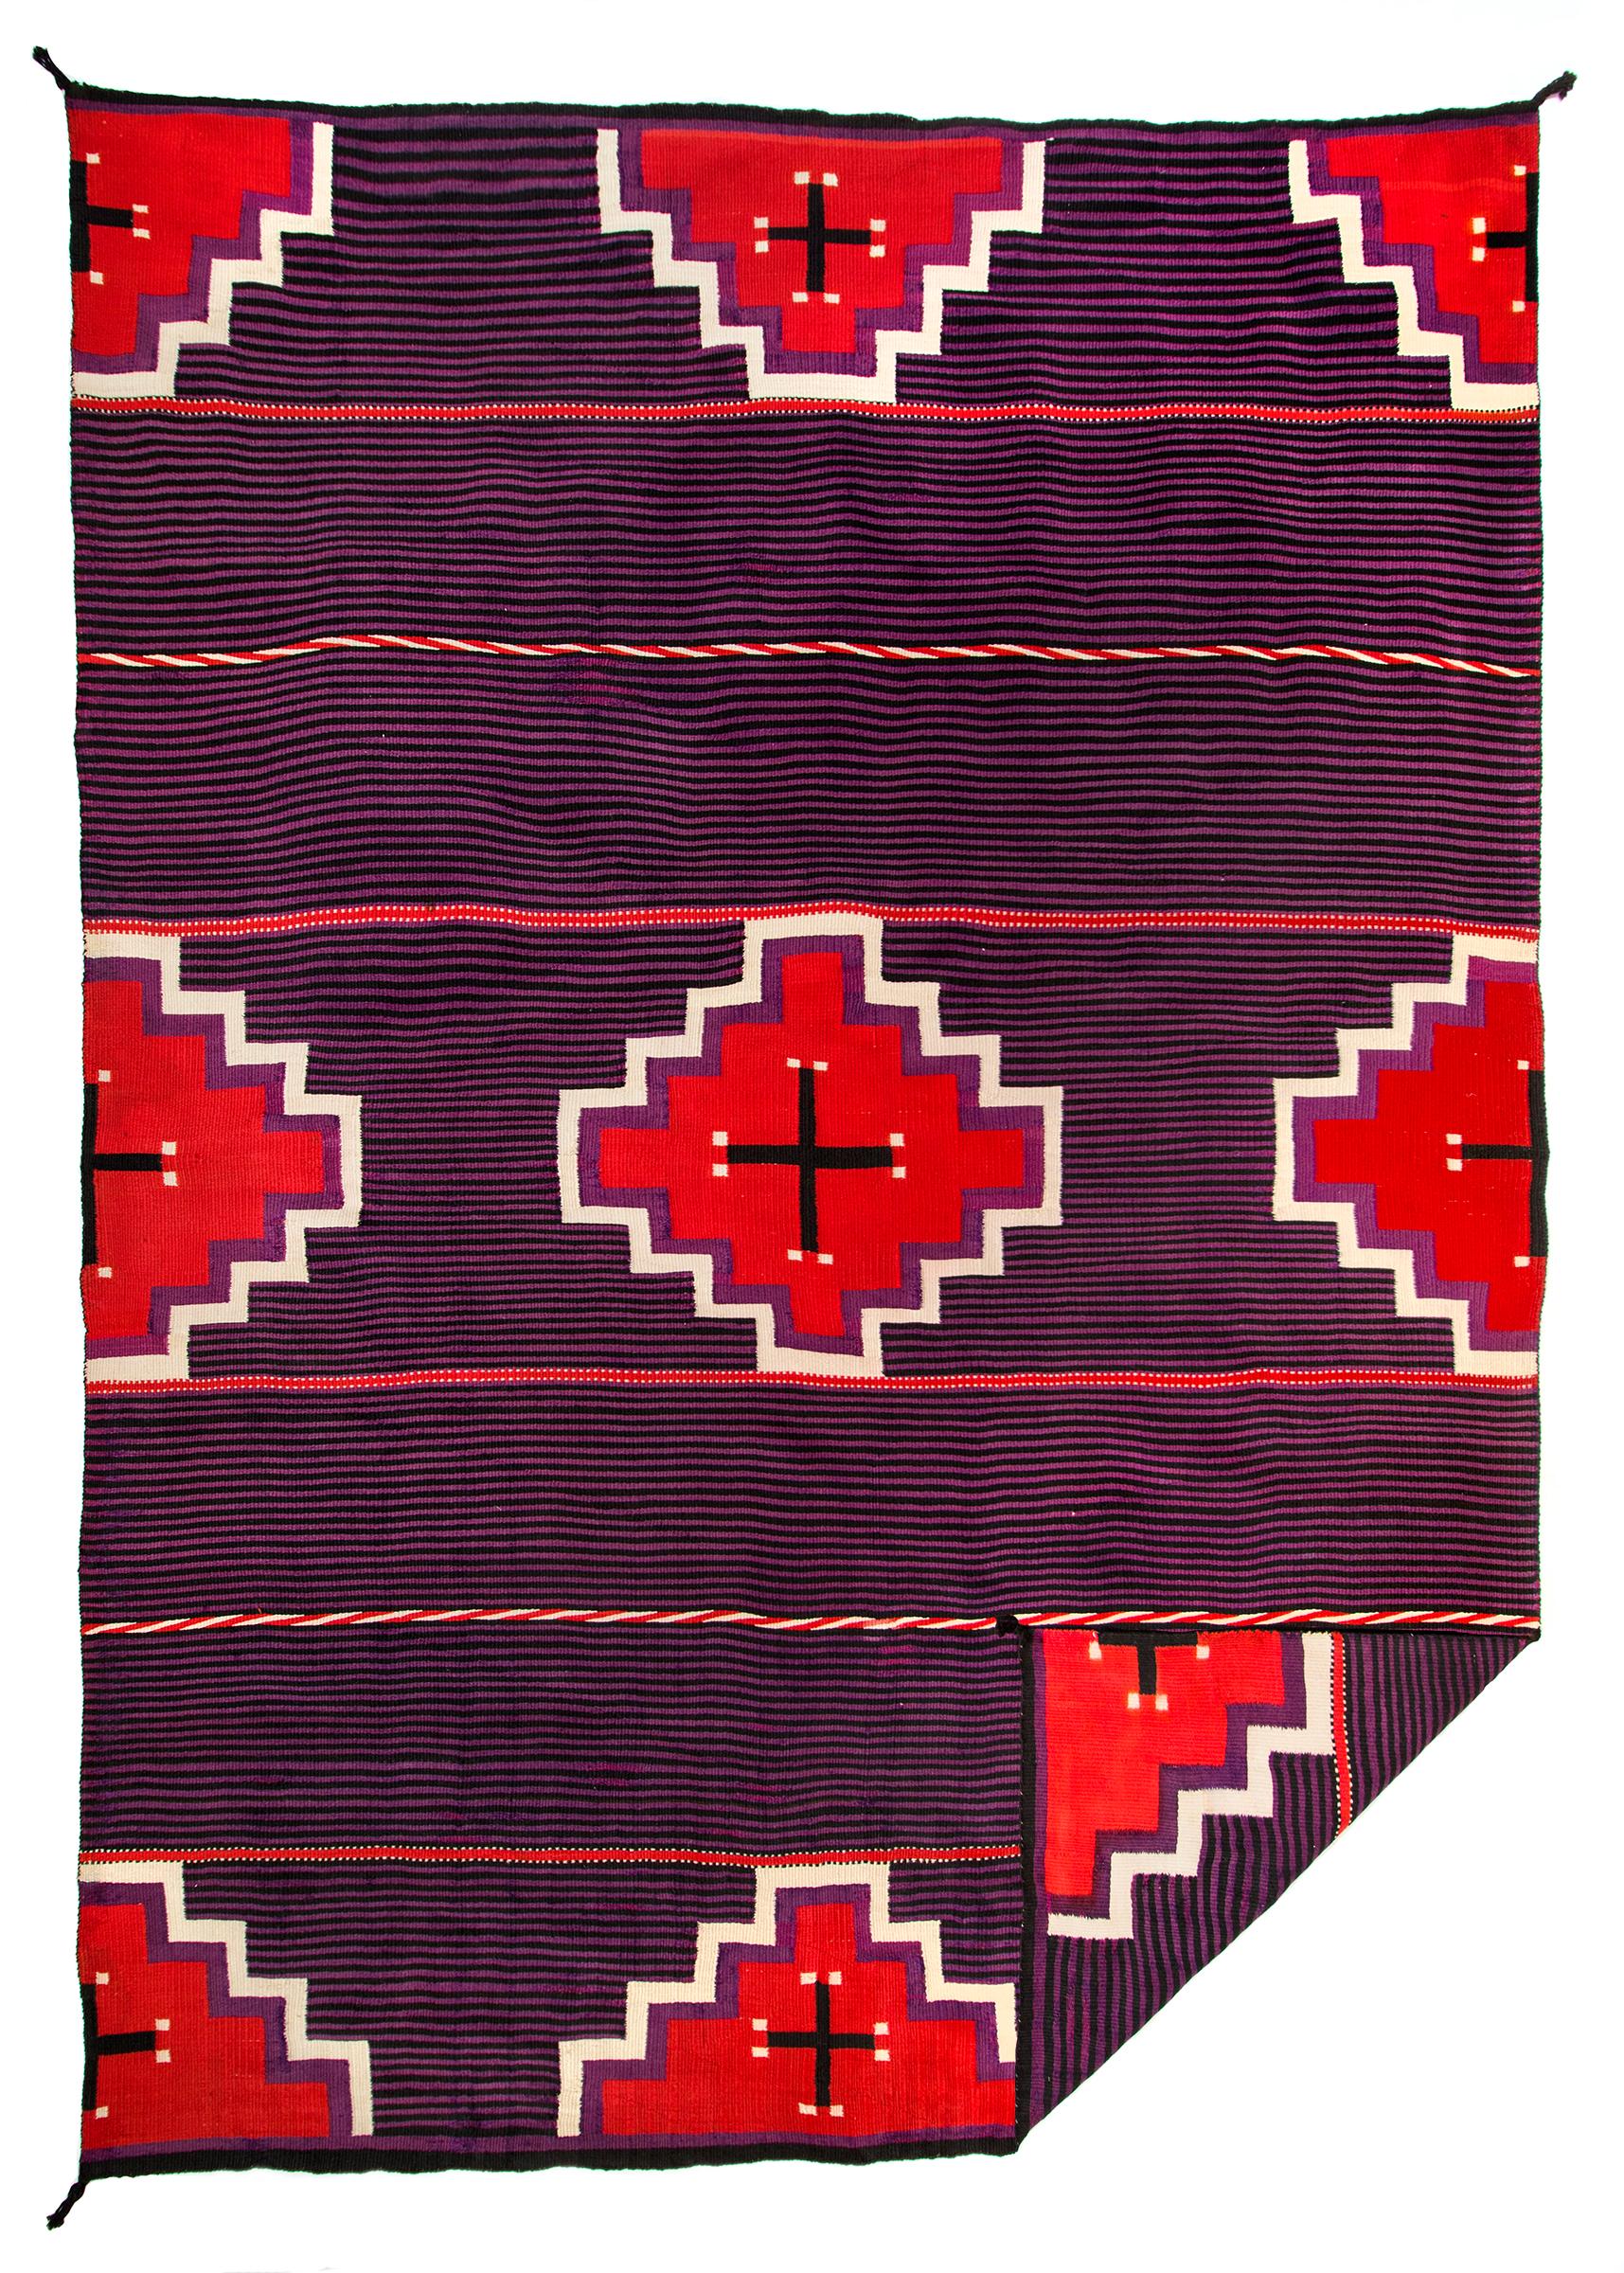 navajo-Decke aus dem 19. Jahrhundert mit einem neunzackigen Rauten- und Kreuzmuster in den Farben Rot, Weiß, Schwarz und Violett, das einem Häuptlingsmuster ähnelt, mit einem klassischen gebänderten Moki-Hintergrund. Die Abmessungen betragen 64½ x